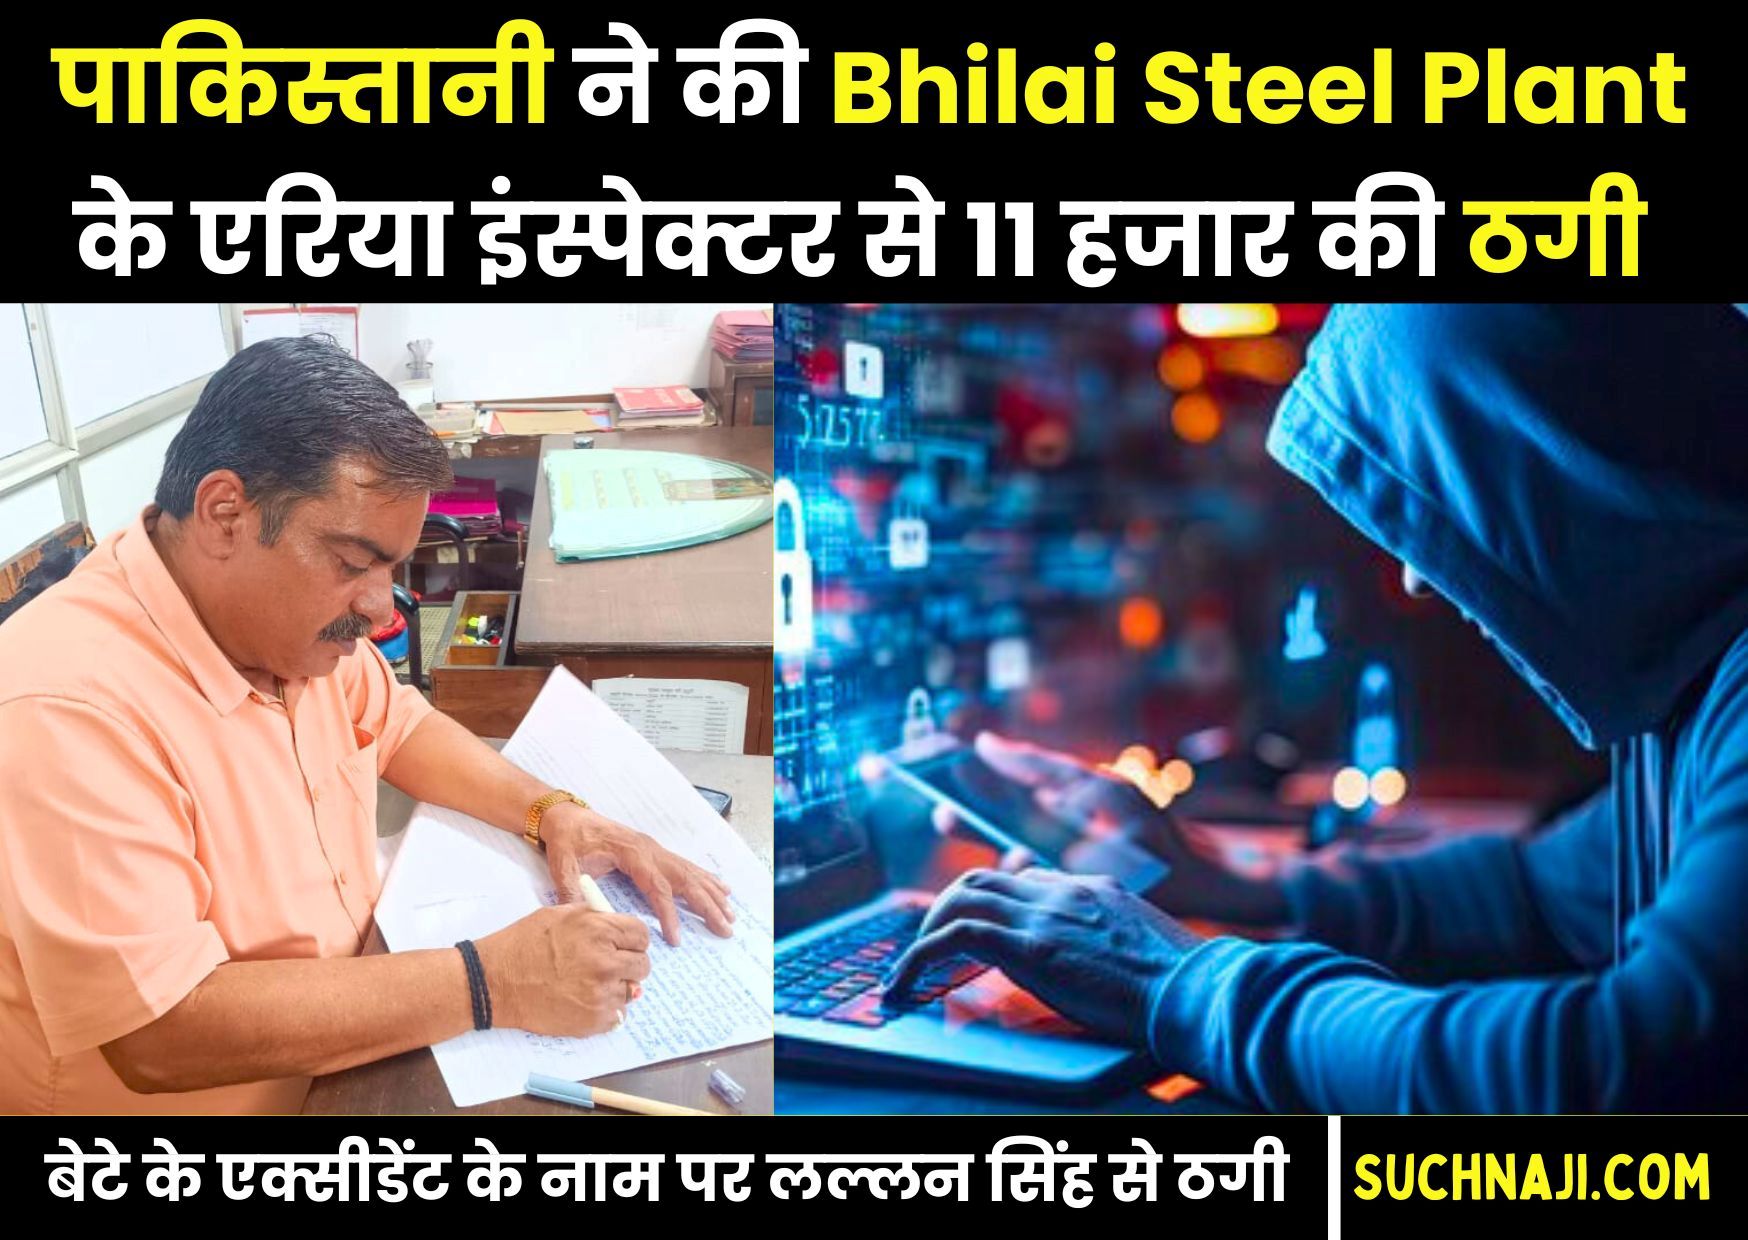 Pakistan से Bhilai Steel Plant के इंफोर्समेंट इंस्पेक्टर के पास आया फोन, बेटे के एक्सीडेंट के नाम पर 11 हजार की ठगी